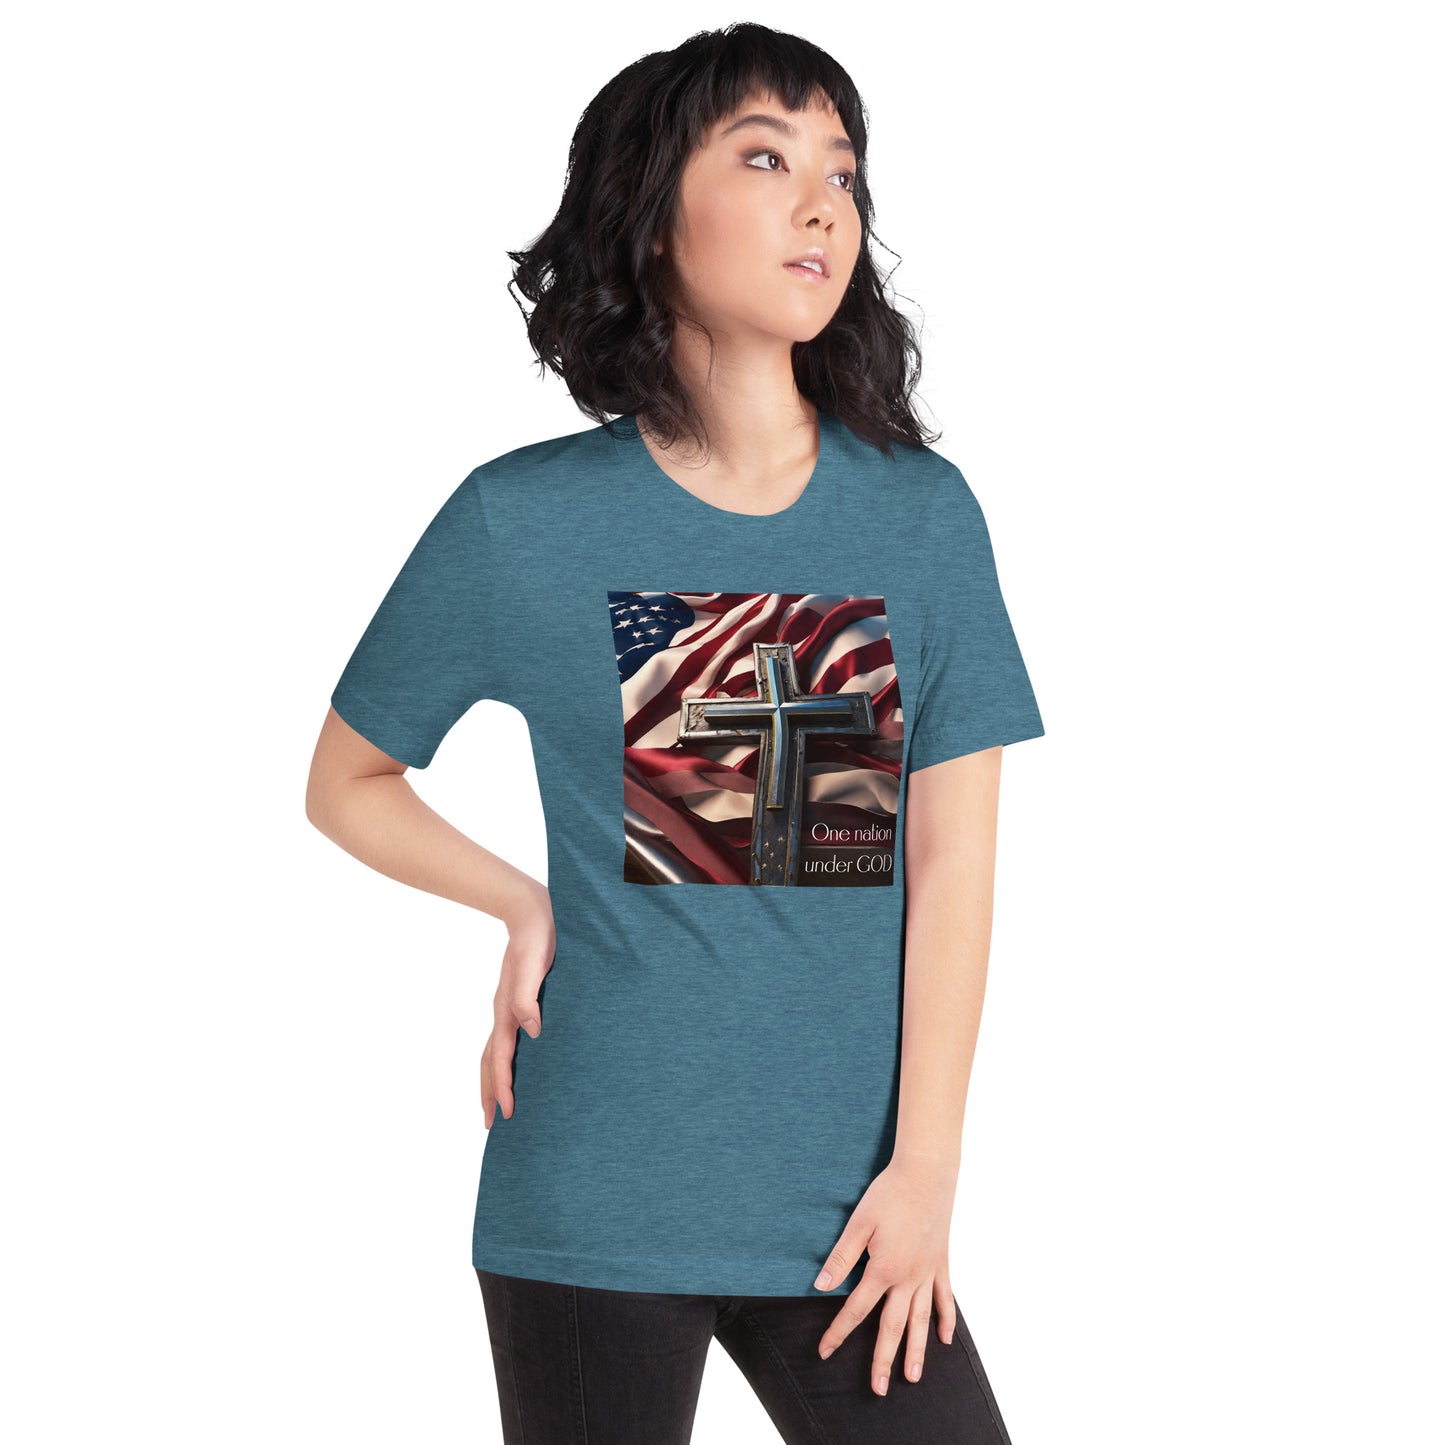 Patriotic Women's Classic Graphic T-Shirt